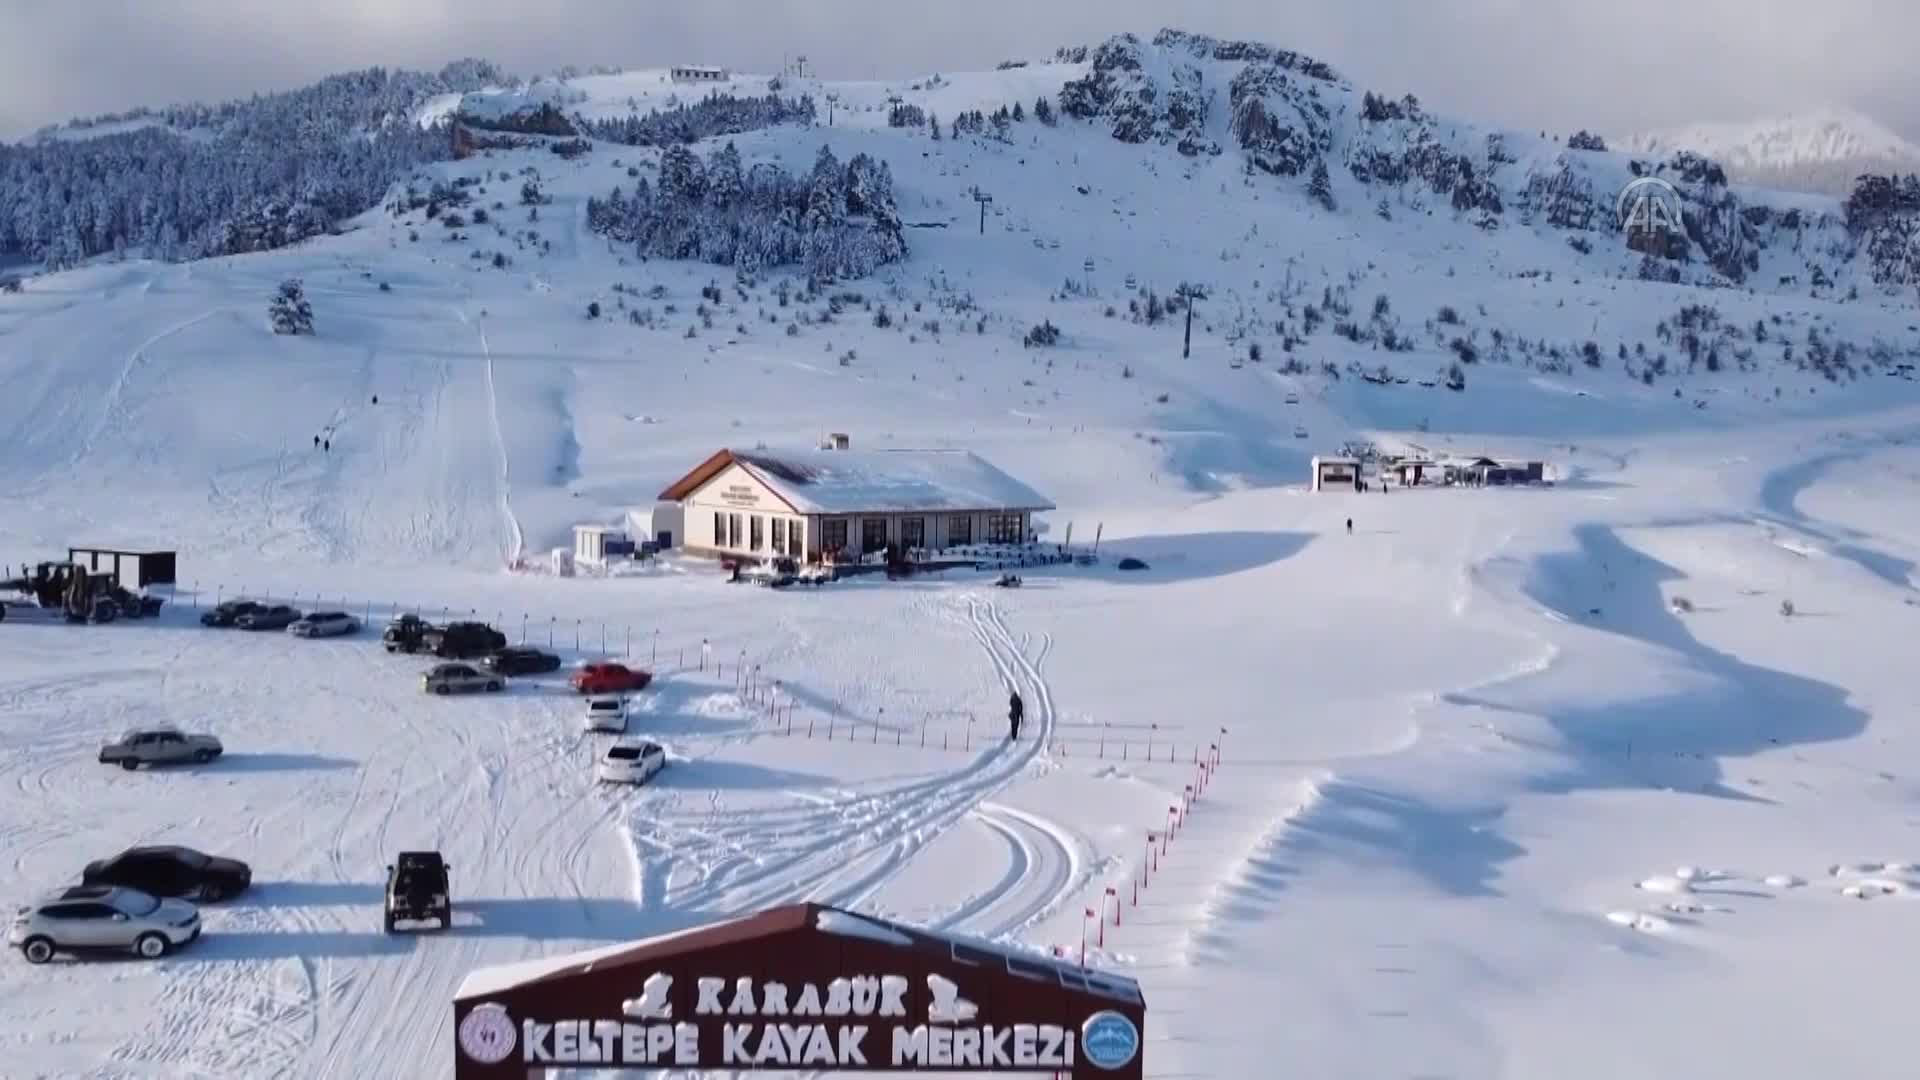 Türkiye’nin genç kayak merkezi Keltepe, kış turizmi destinasyonu olma yolunda